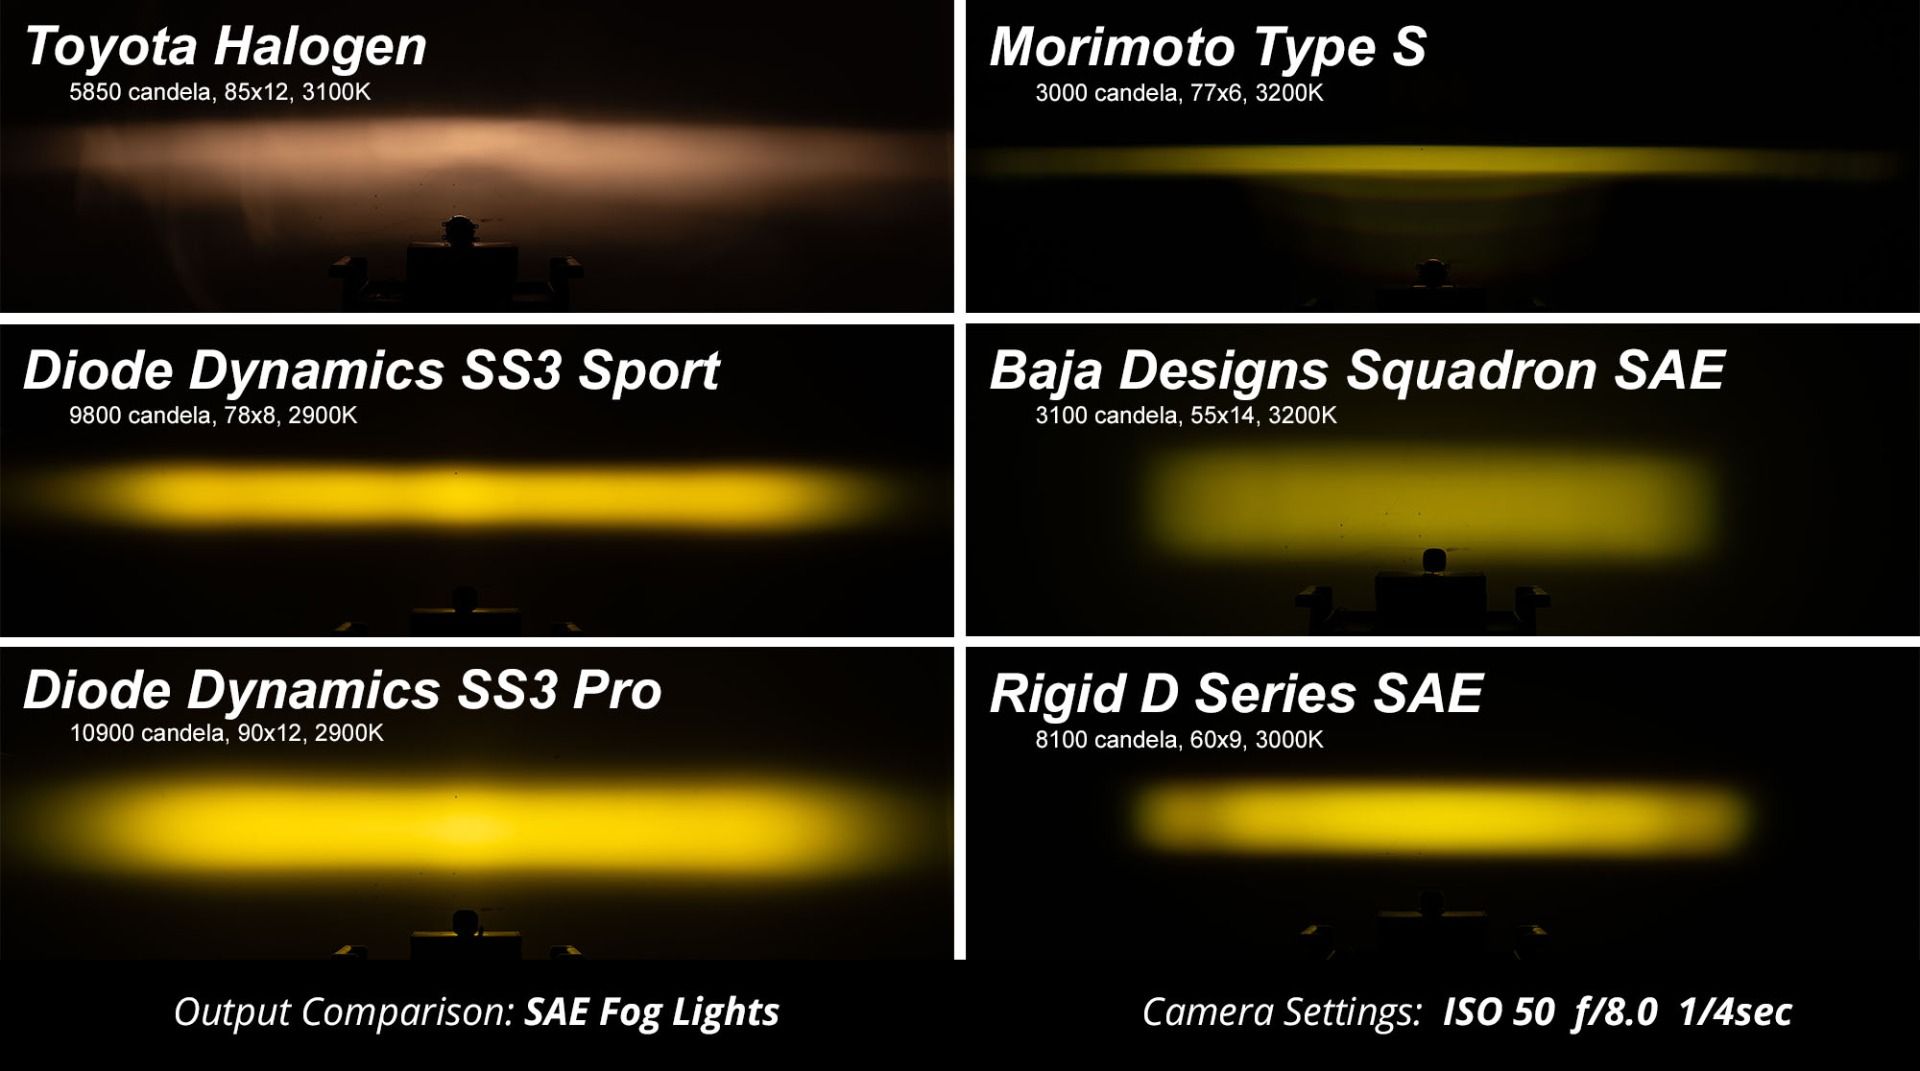 SS3 LED Fog Light Kit for 2020-2023 Chevrolet Silverado HD 2500/3500